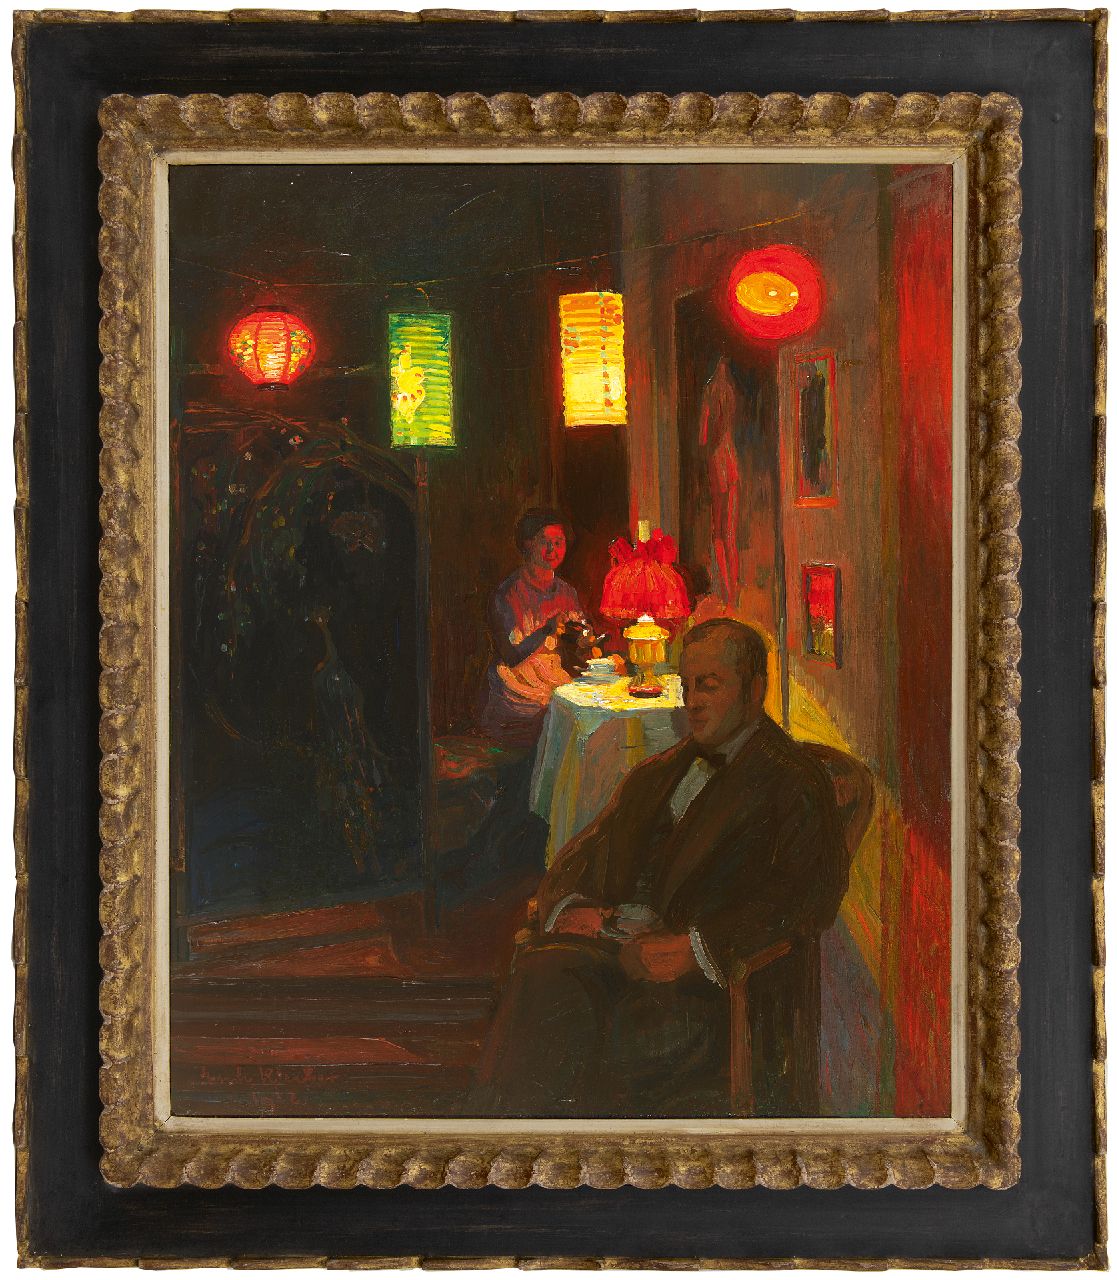 Kleiber E.  | Erich Kleiber | Schilderijen te koop aangeboden | Avondlijk theeuurtje bij lampionlicht, olieverf op doek 68,0 x 55,0 cm, gesigneerd linksonder en gedateerd 1912